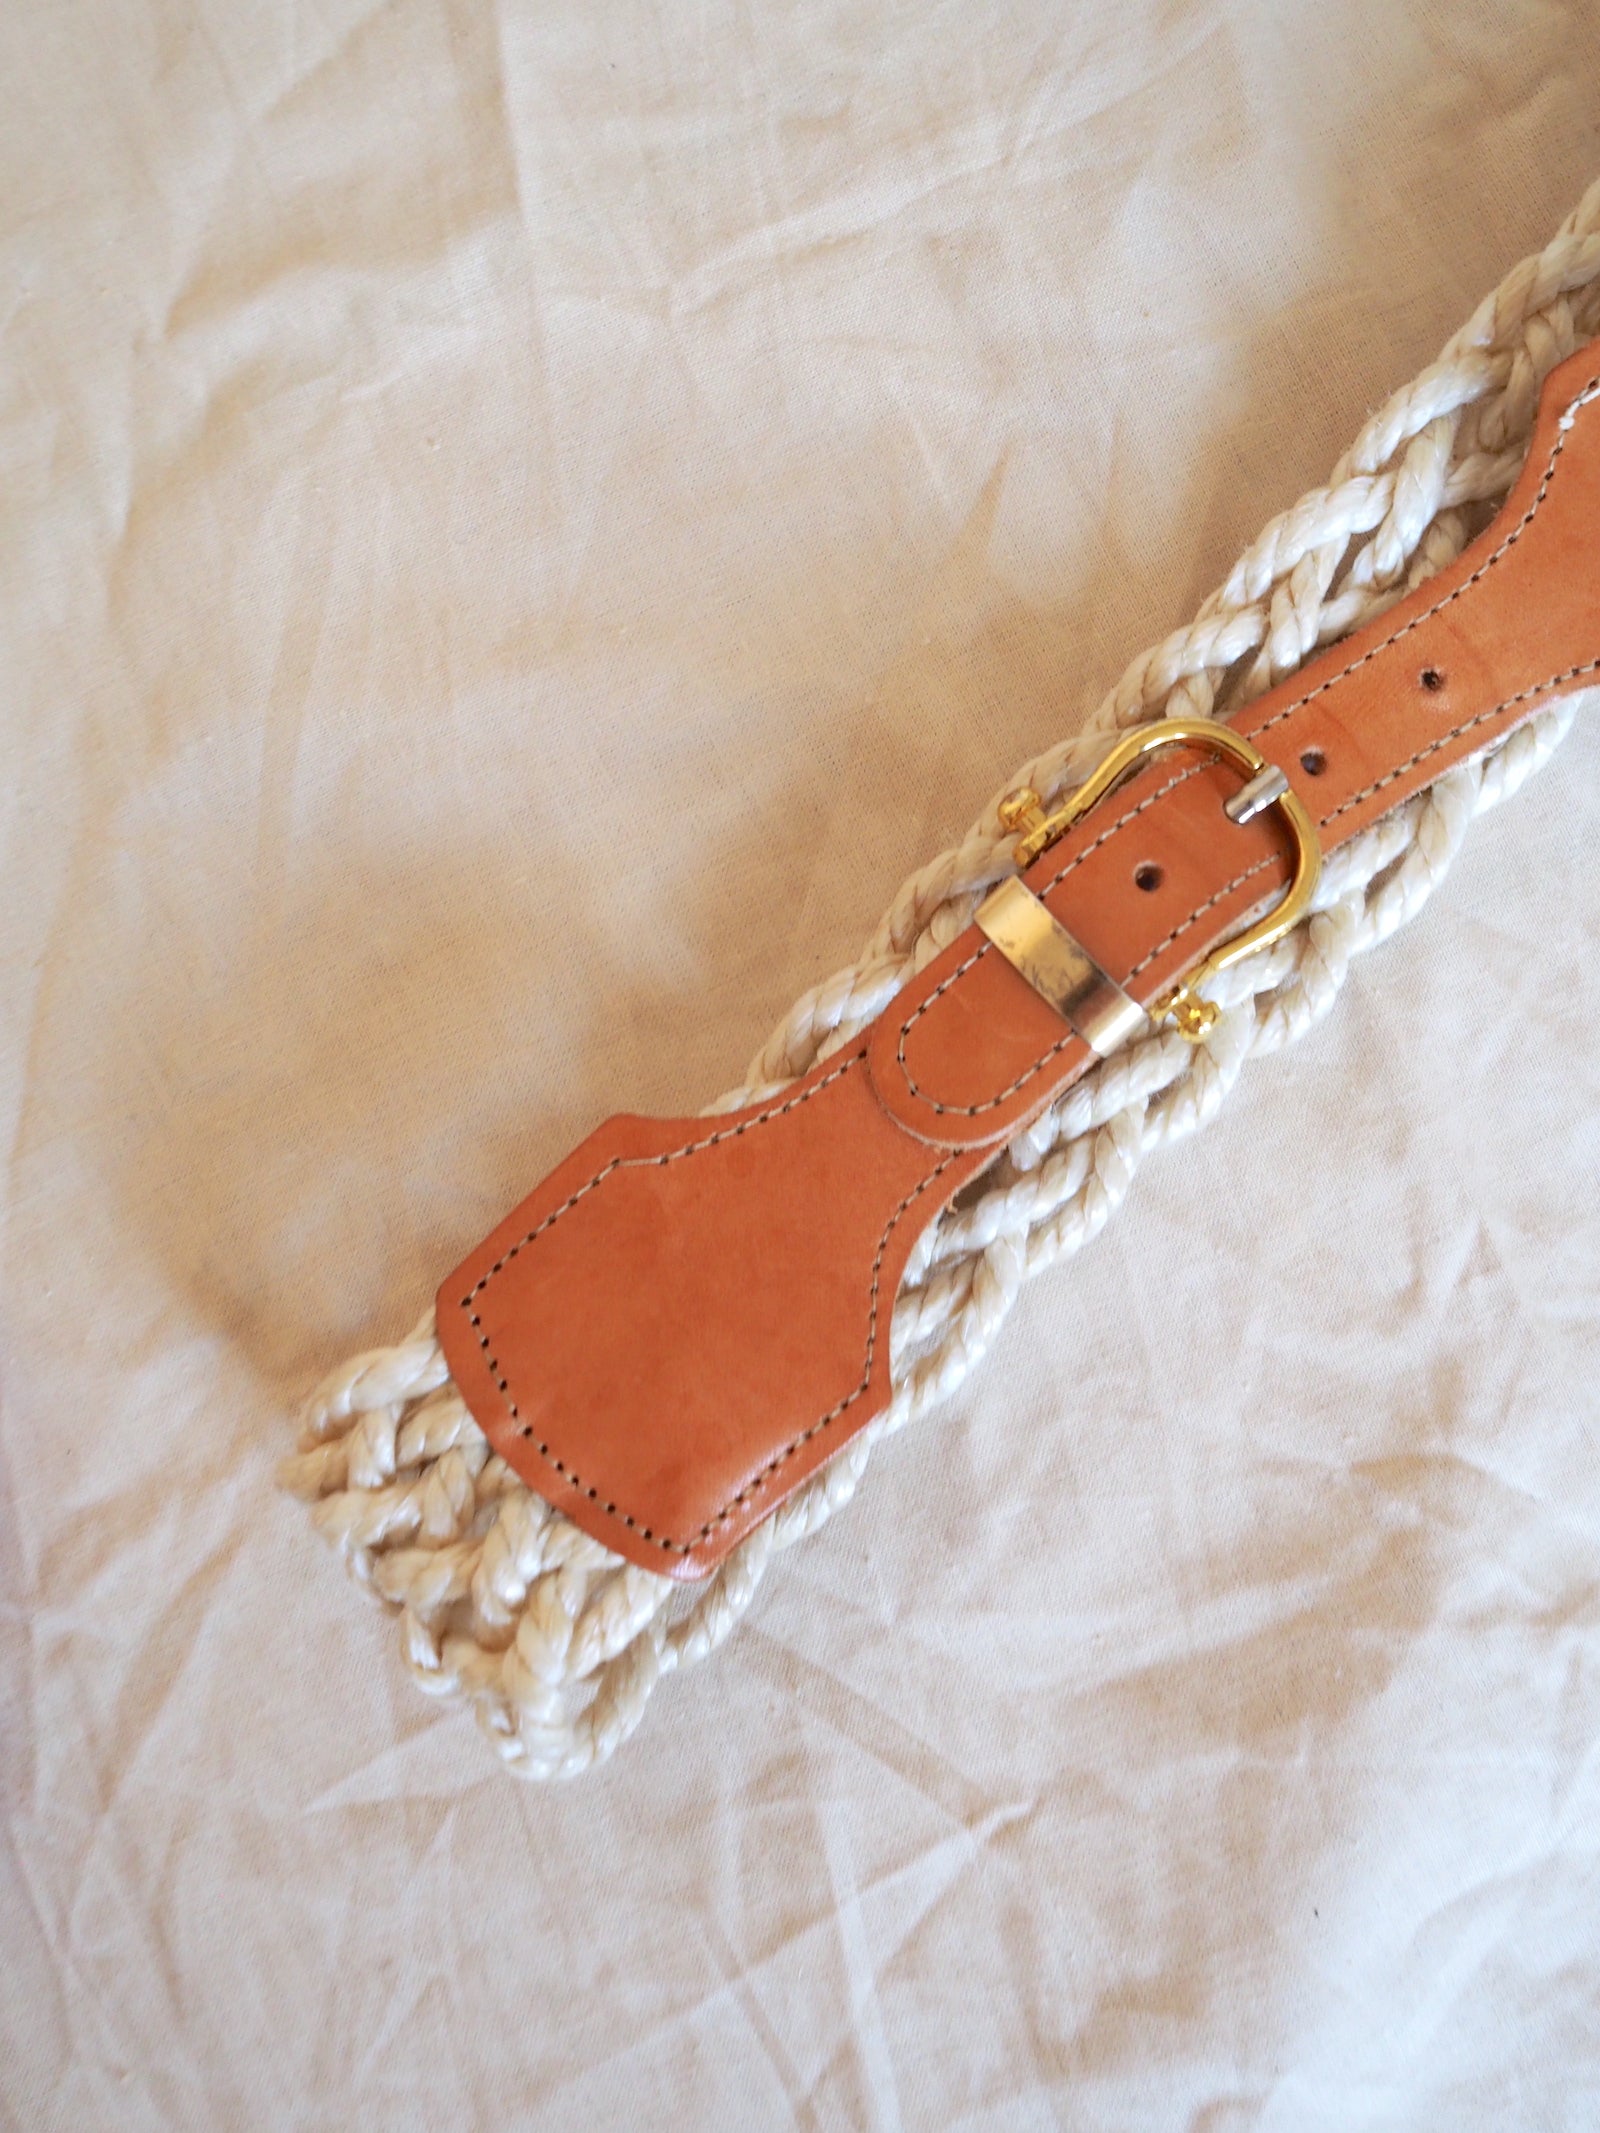 Vintage Leather & Rope Belt